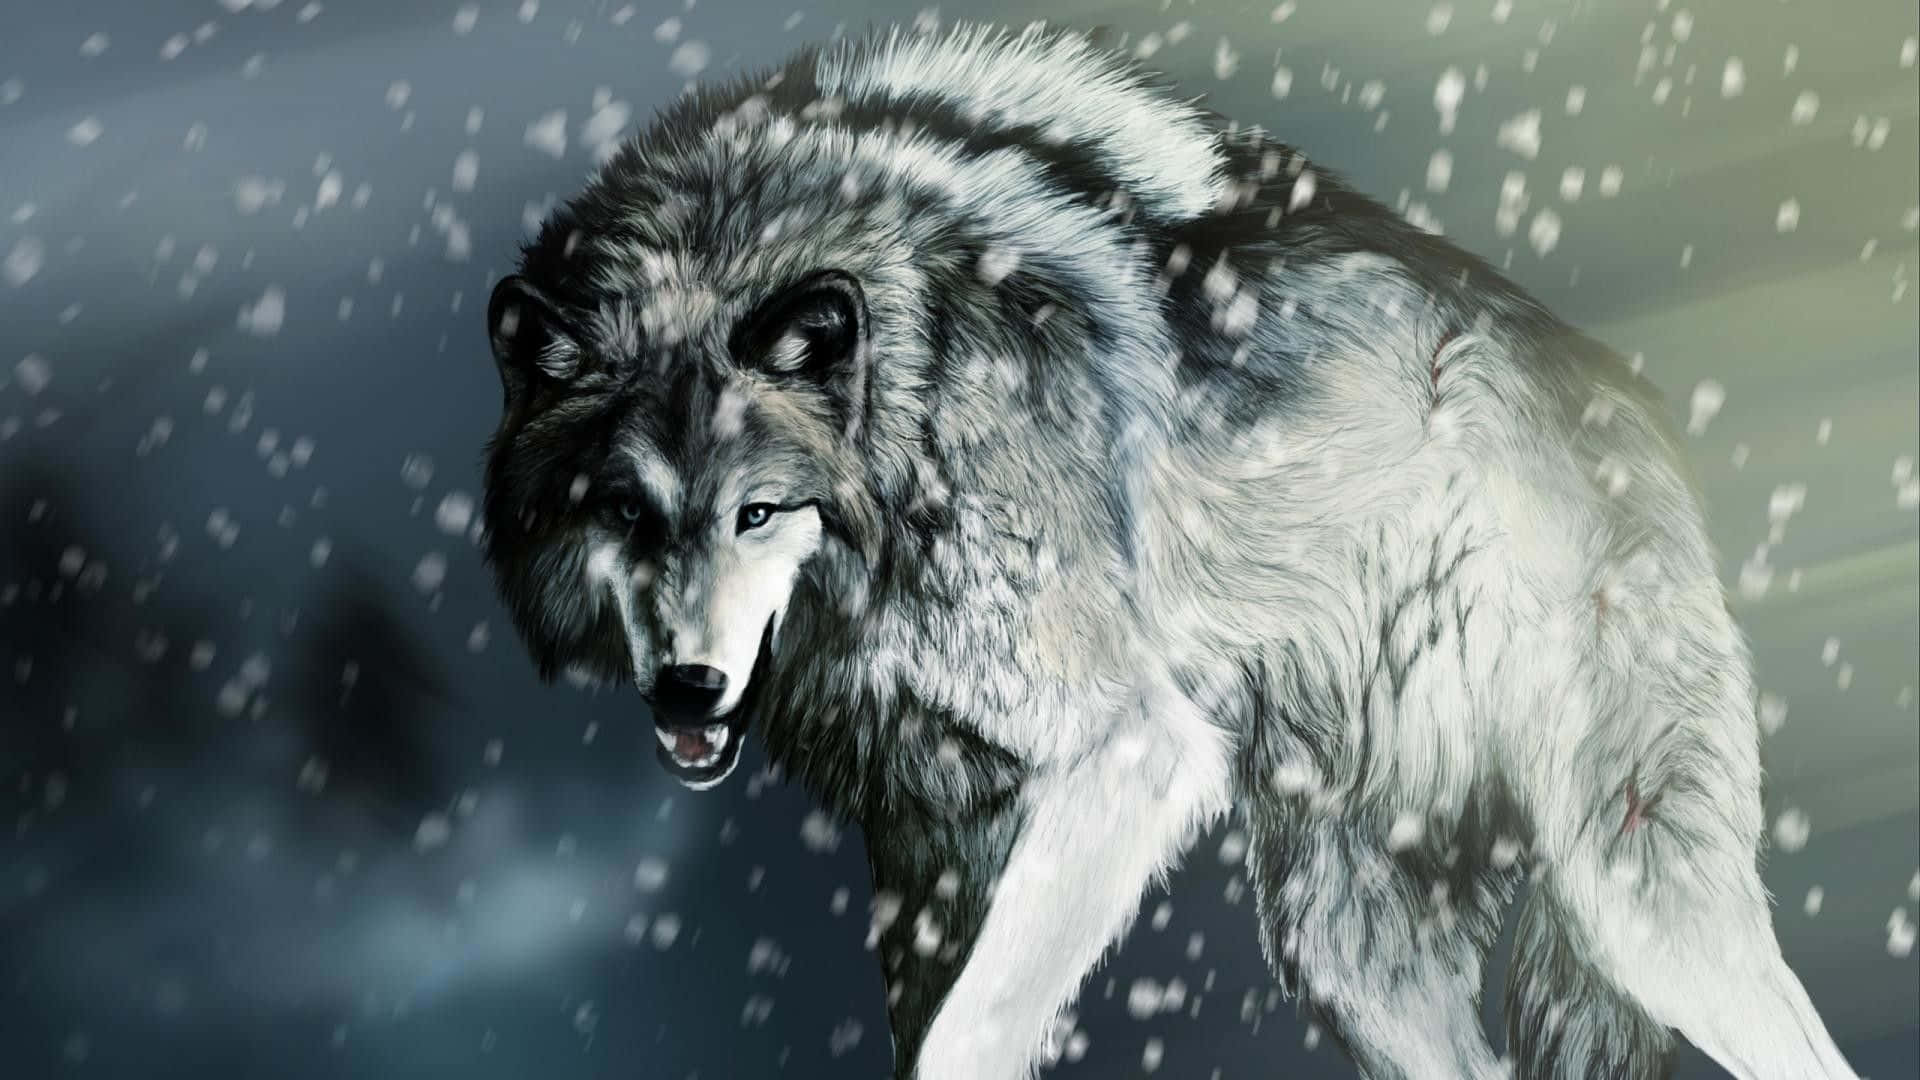 Mystical Winter Wolf Wallpaper